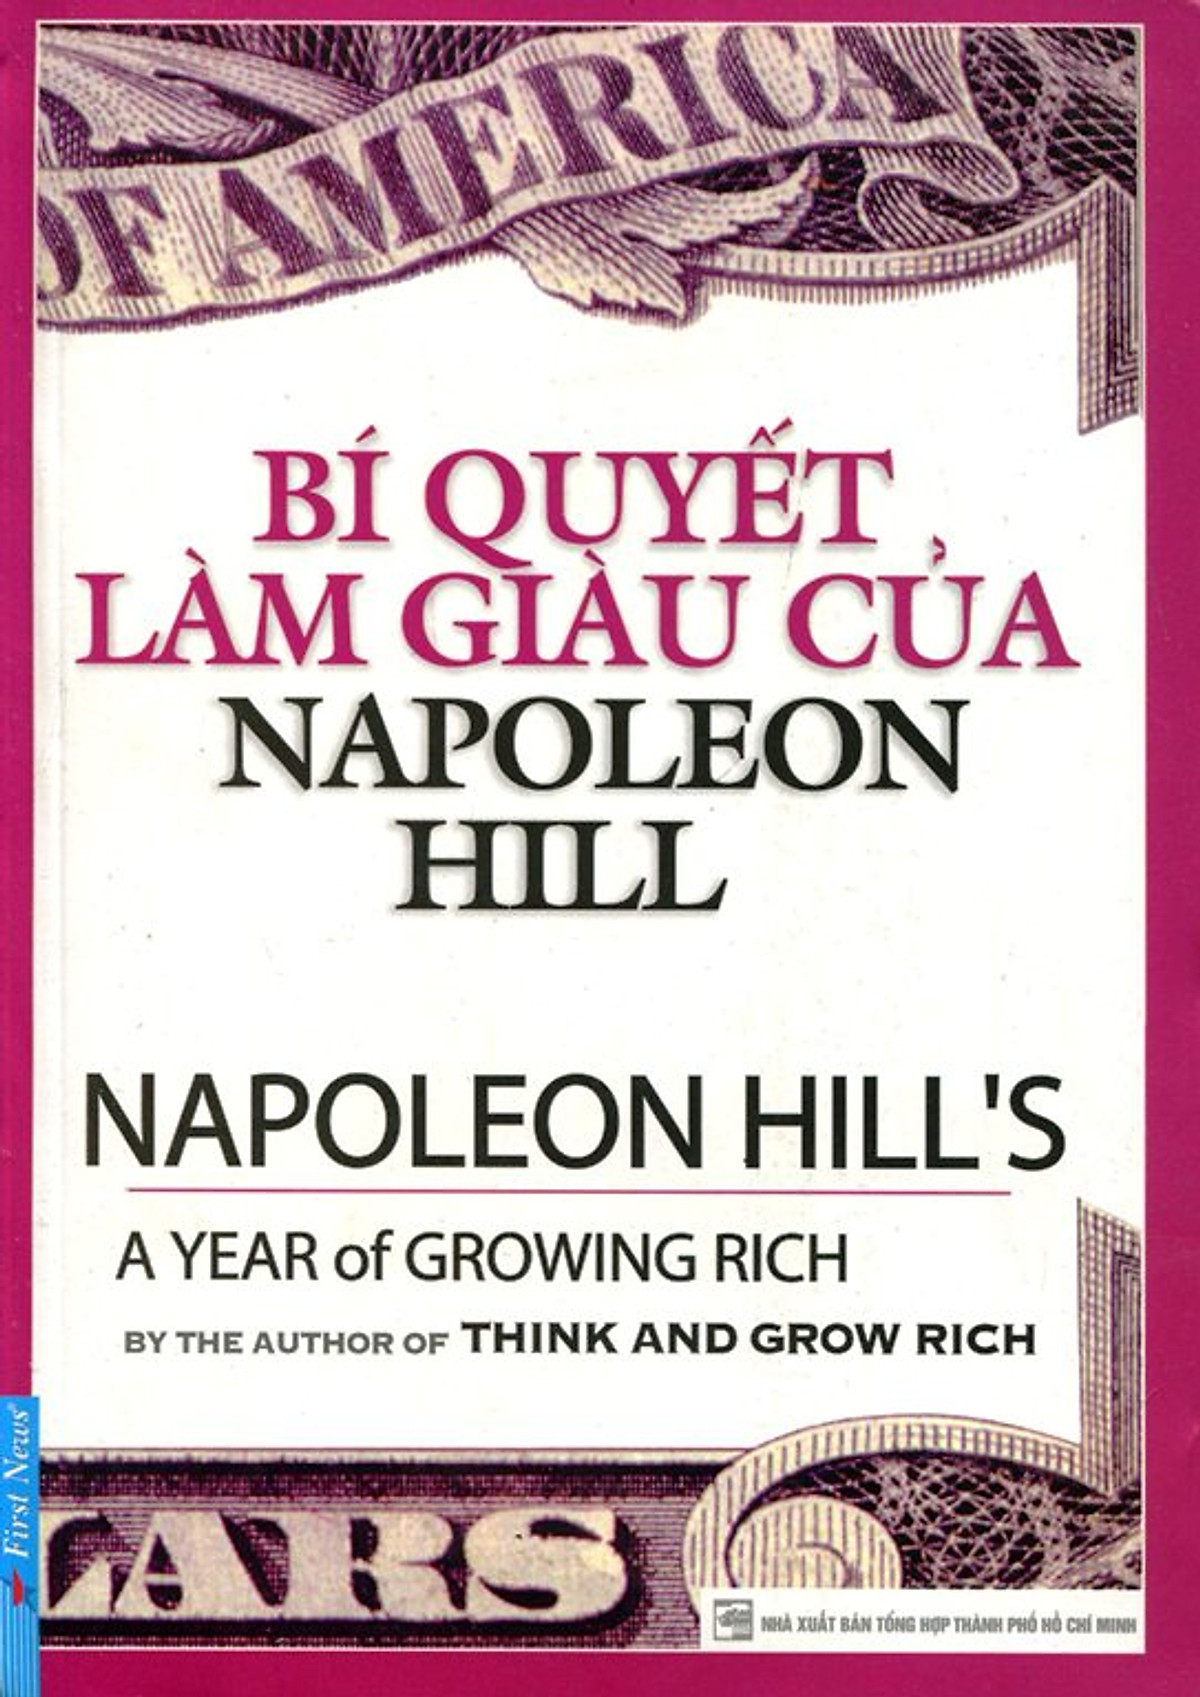 Combo 2 cuốn sách: Bí Quyết Làm Giàu Của NapoLeon Hill + Phụ Nữ Hiện Đại Nghĩ Giàu Và Làm Giàu